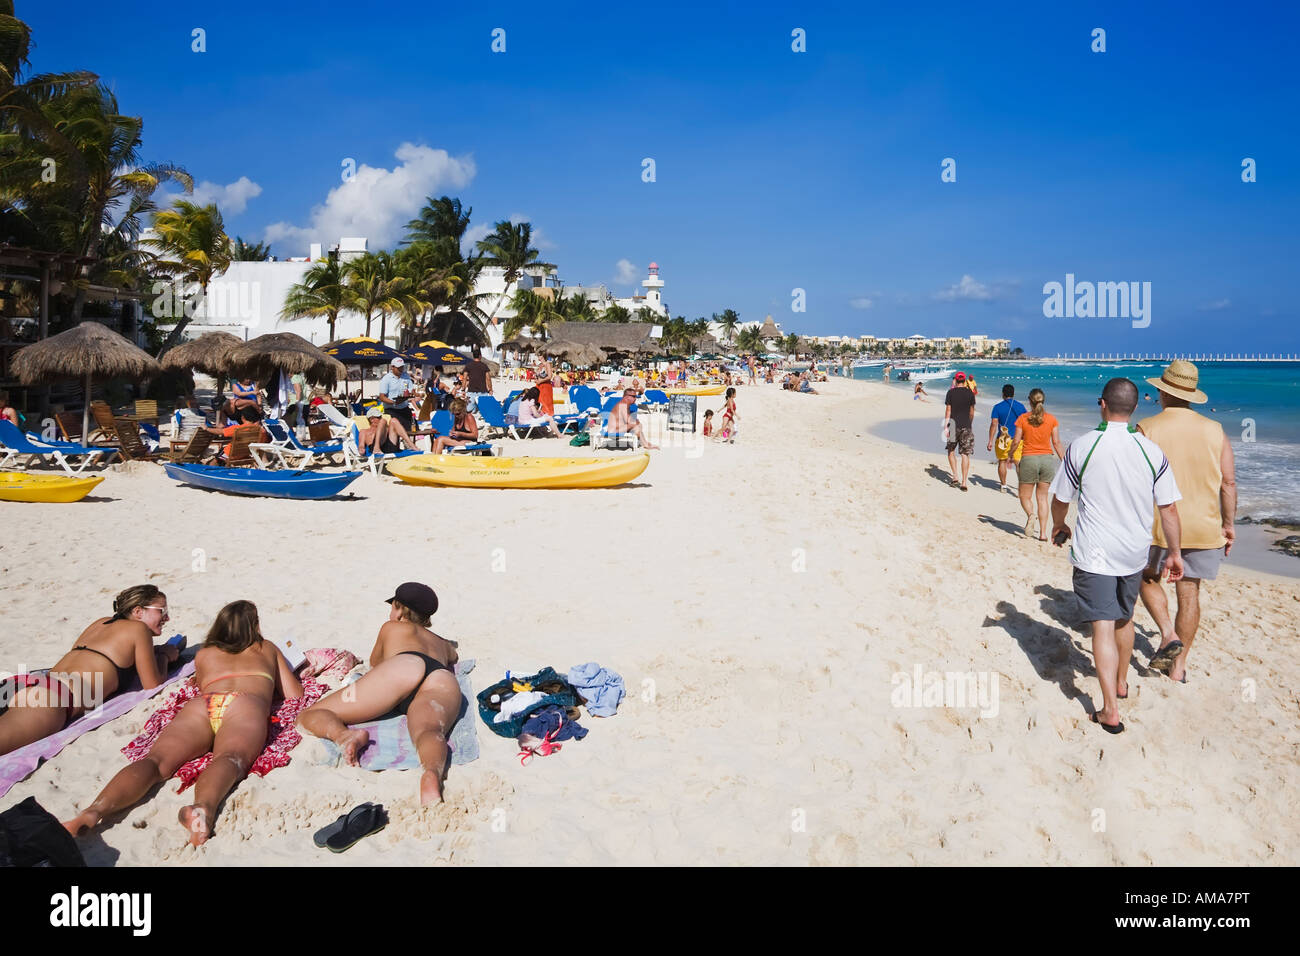 Le soleil appréciant les eaux turquoise et des plages de sable blanc de Playa del Carmen Banque D'Images